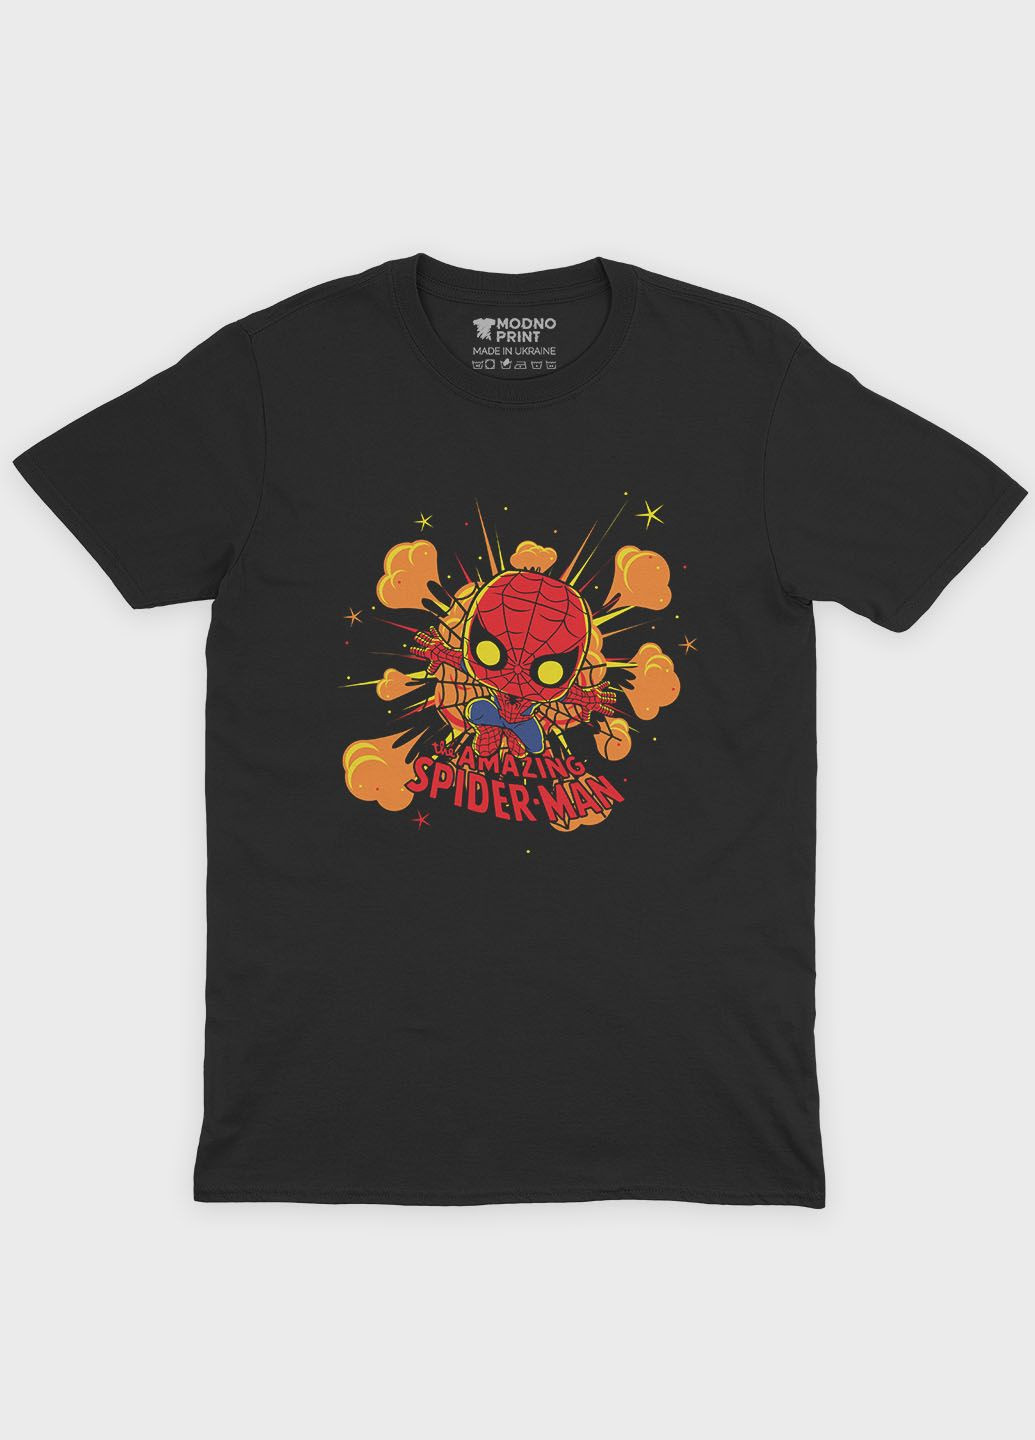 Чорна чоловіча футболка з принтом супергероя - людина-павук (ts001-1-bl-006-014-056) Modno